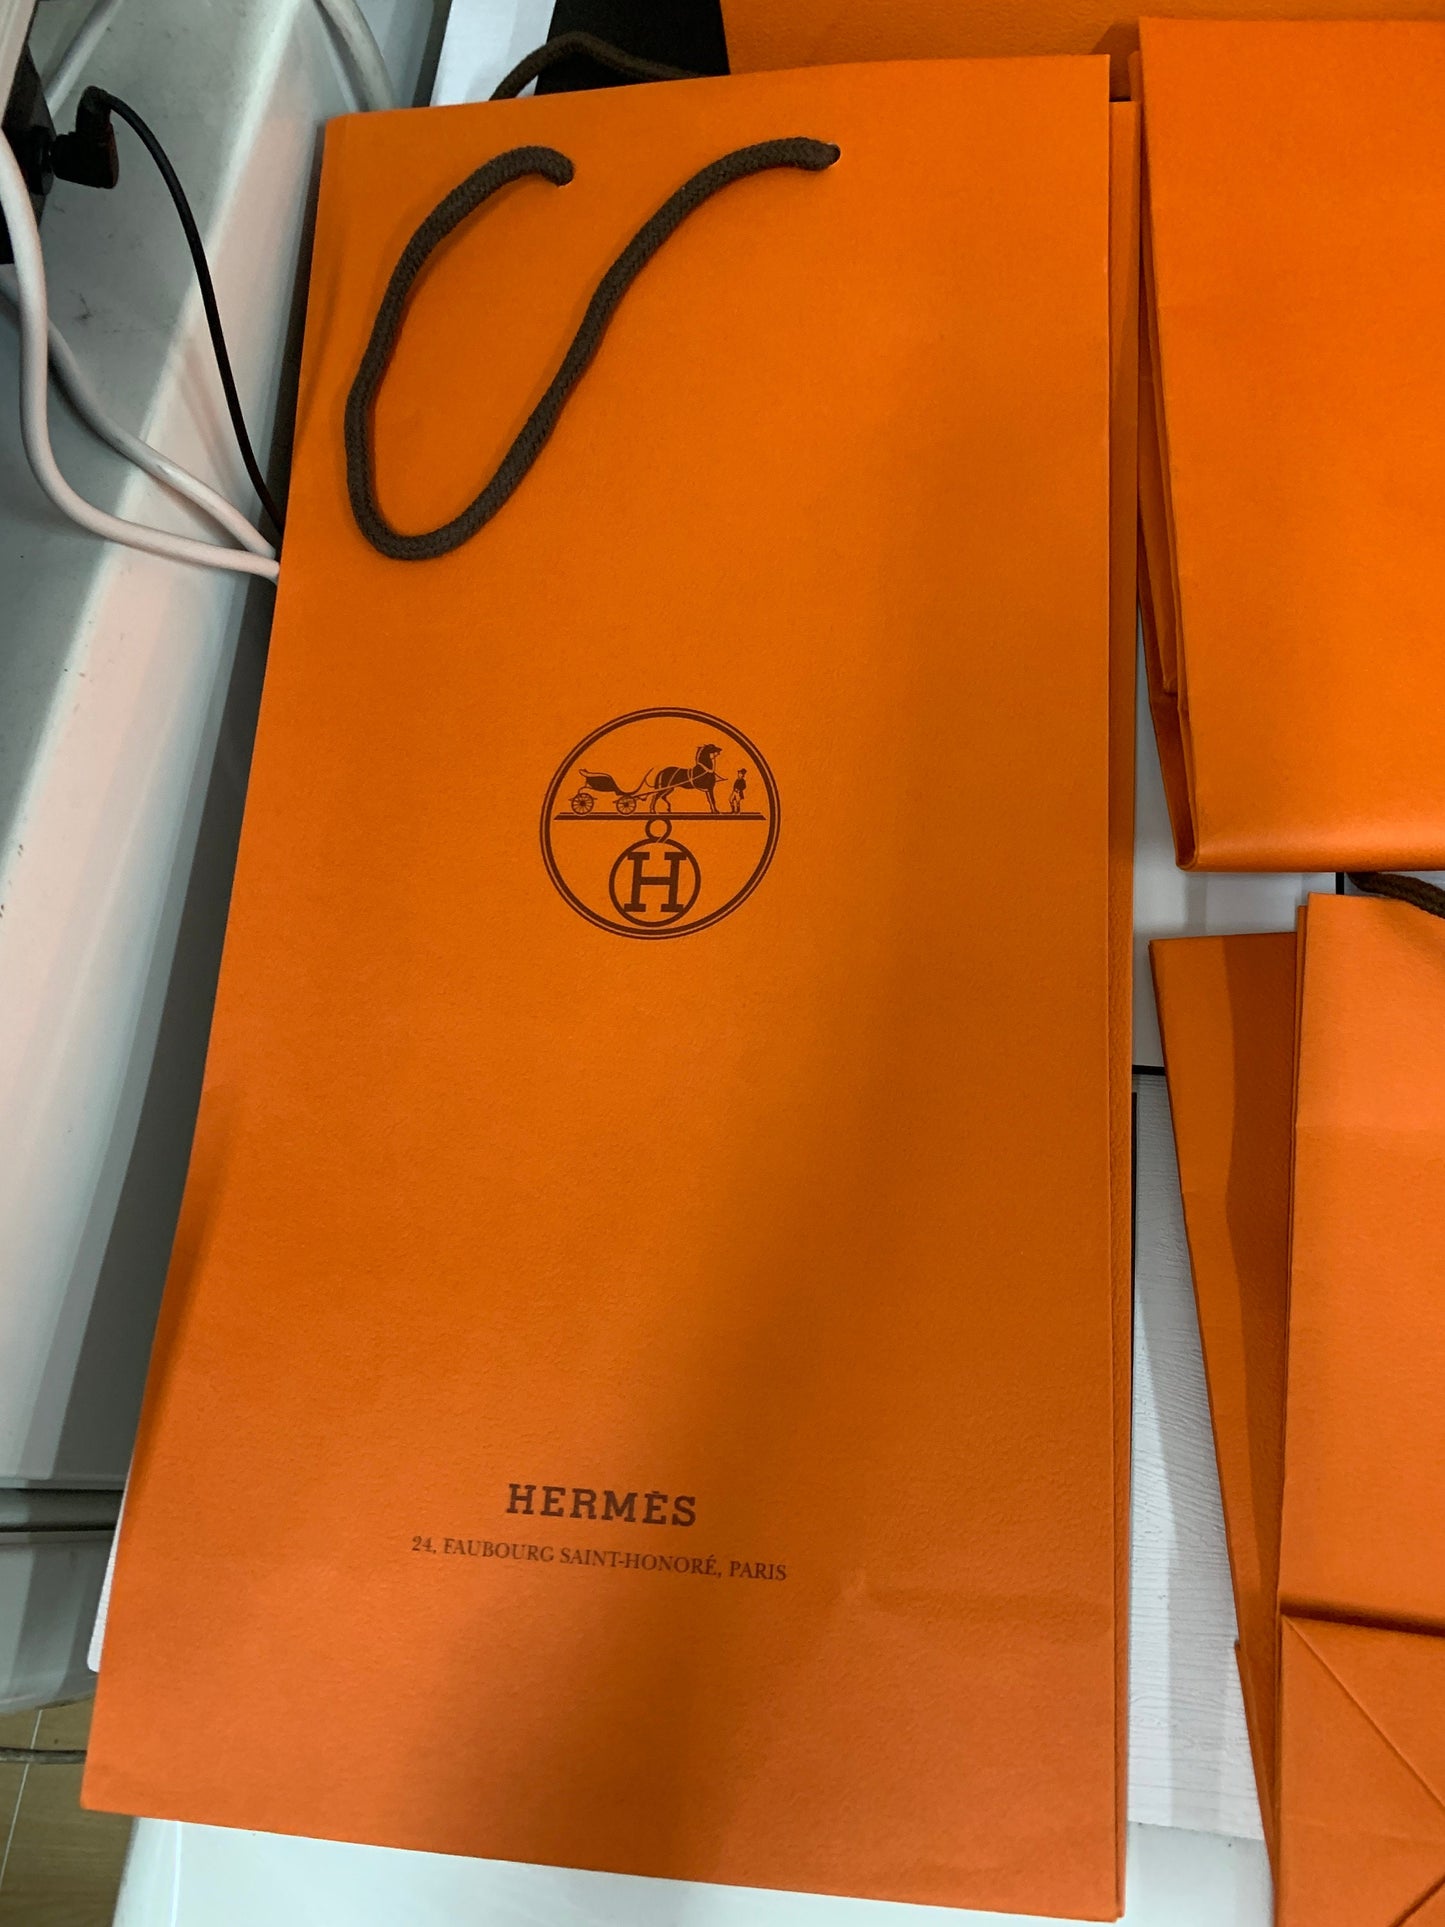 Hermés Gift bag, orange gift bag, wrapping, Original French scarf paper bag, belt paper bag gift bag tie paper bag